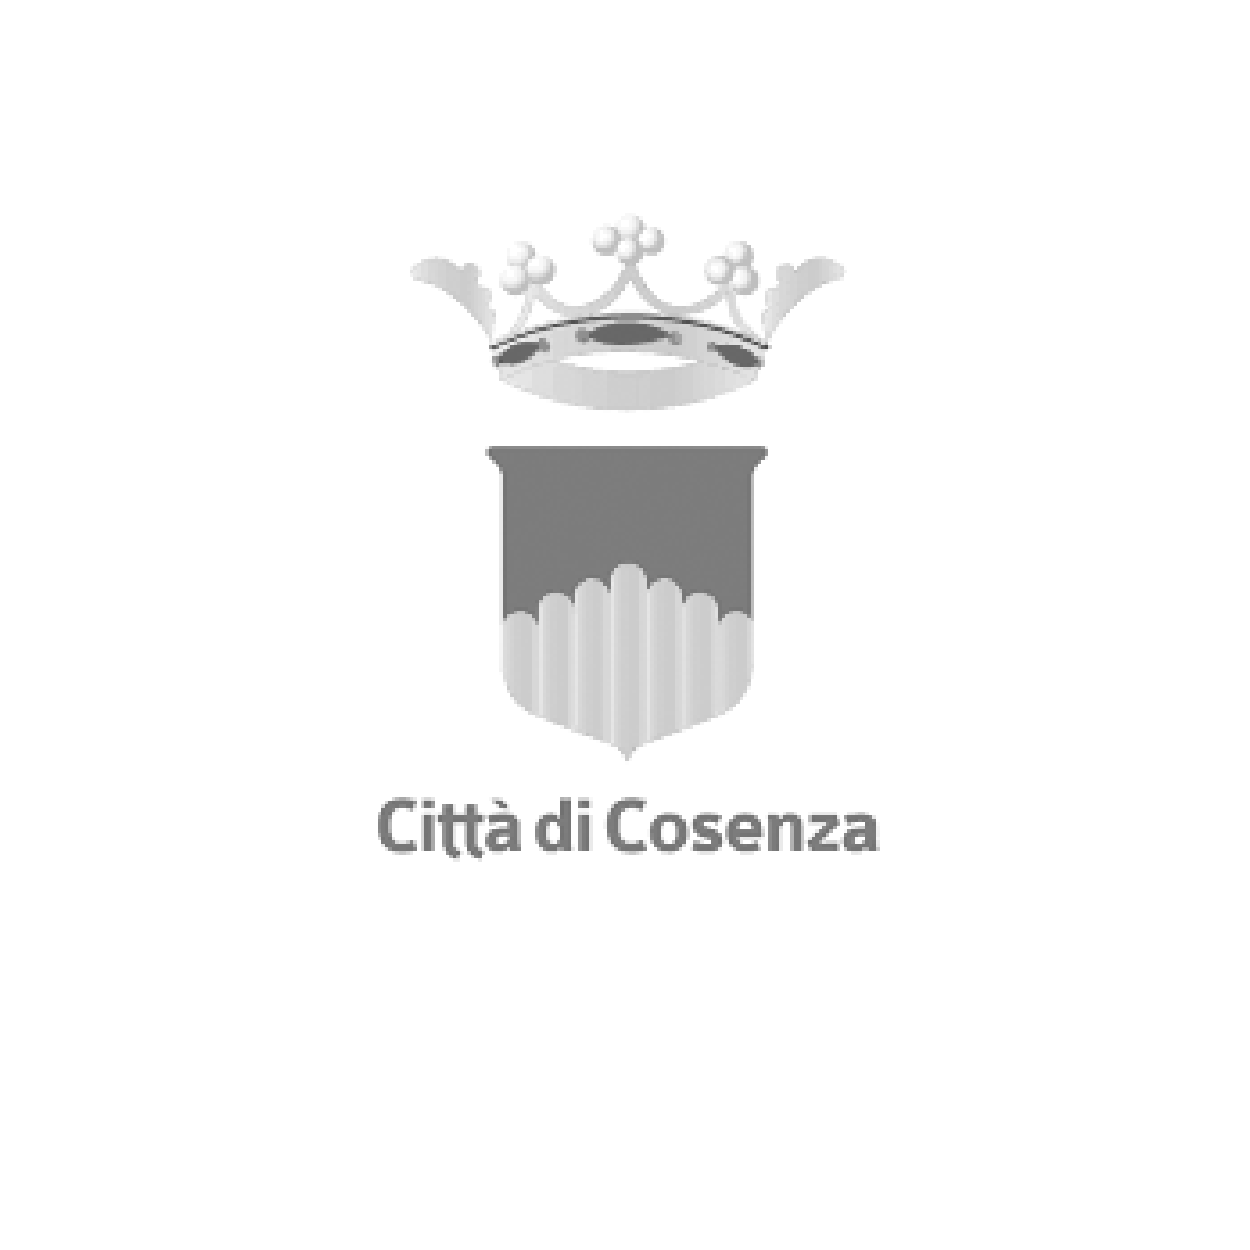 Advertising Città di Cosenza | Ad.One Agenzia di comunicazione